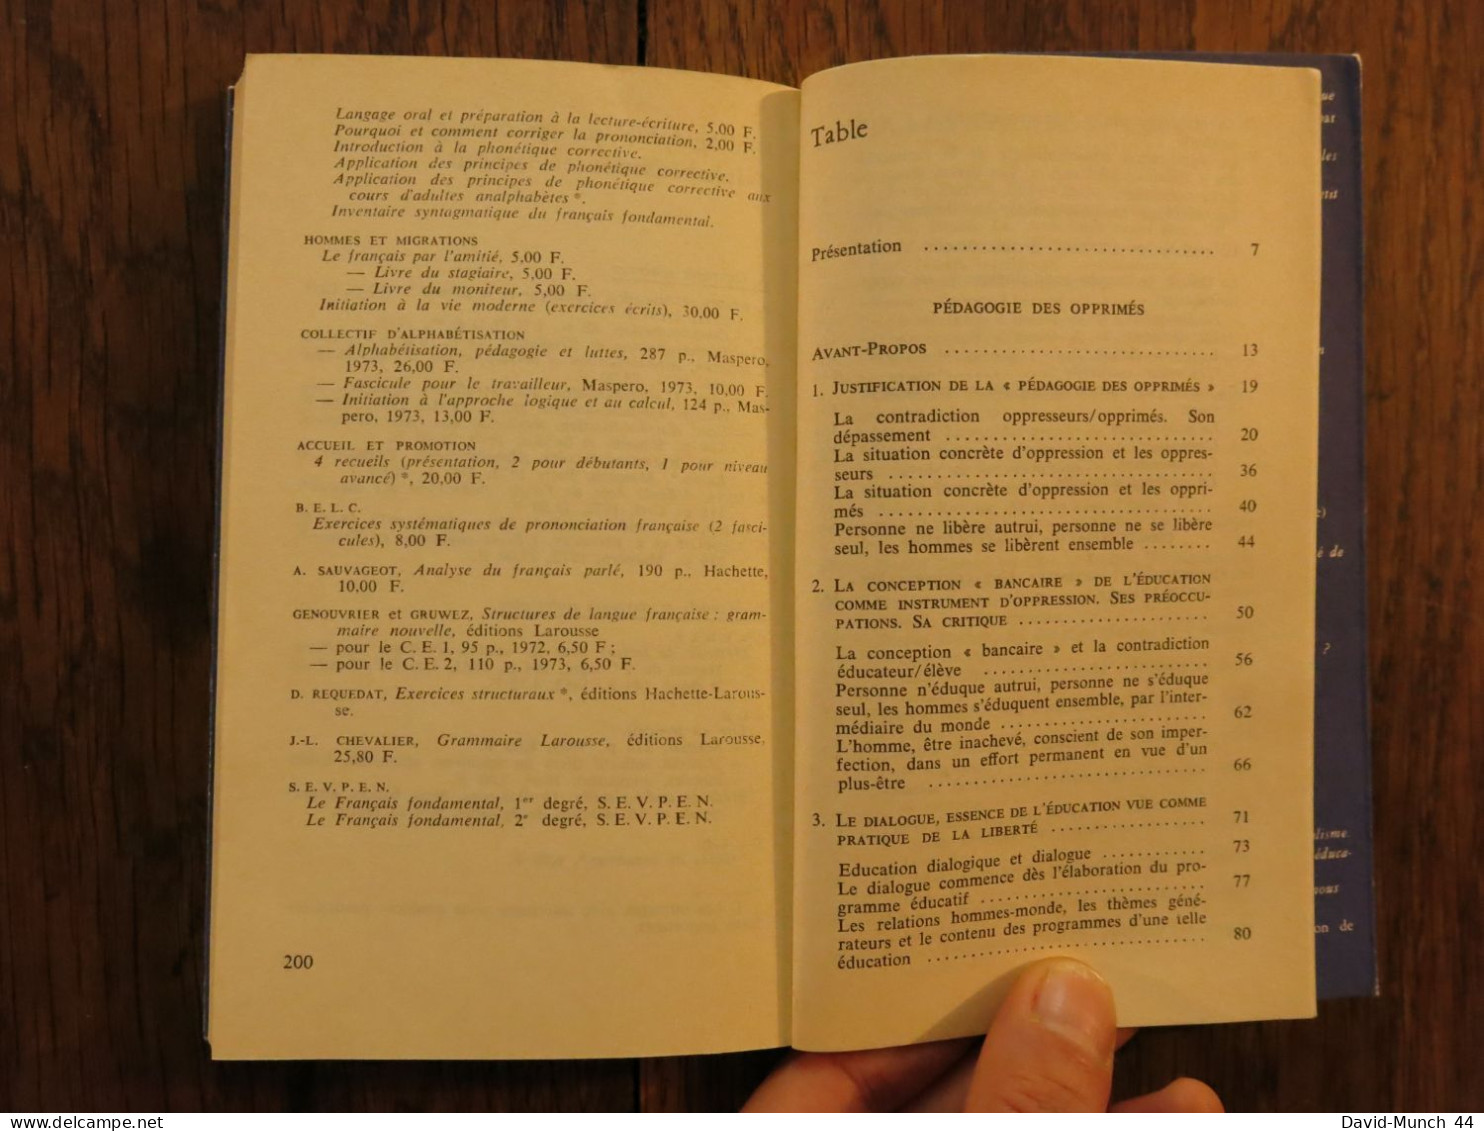 Pédagogie des opprimés de Paulo Freire. FM, Collection: Petite collection Maspero. 1977